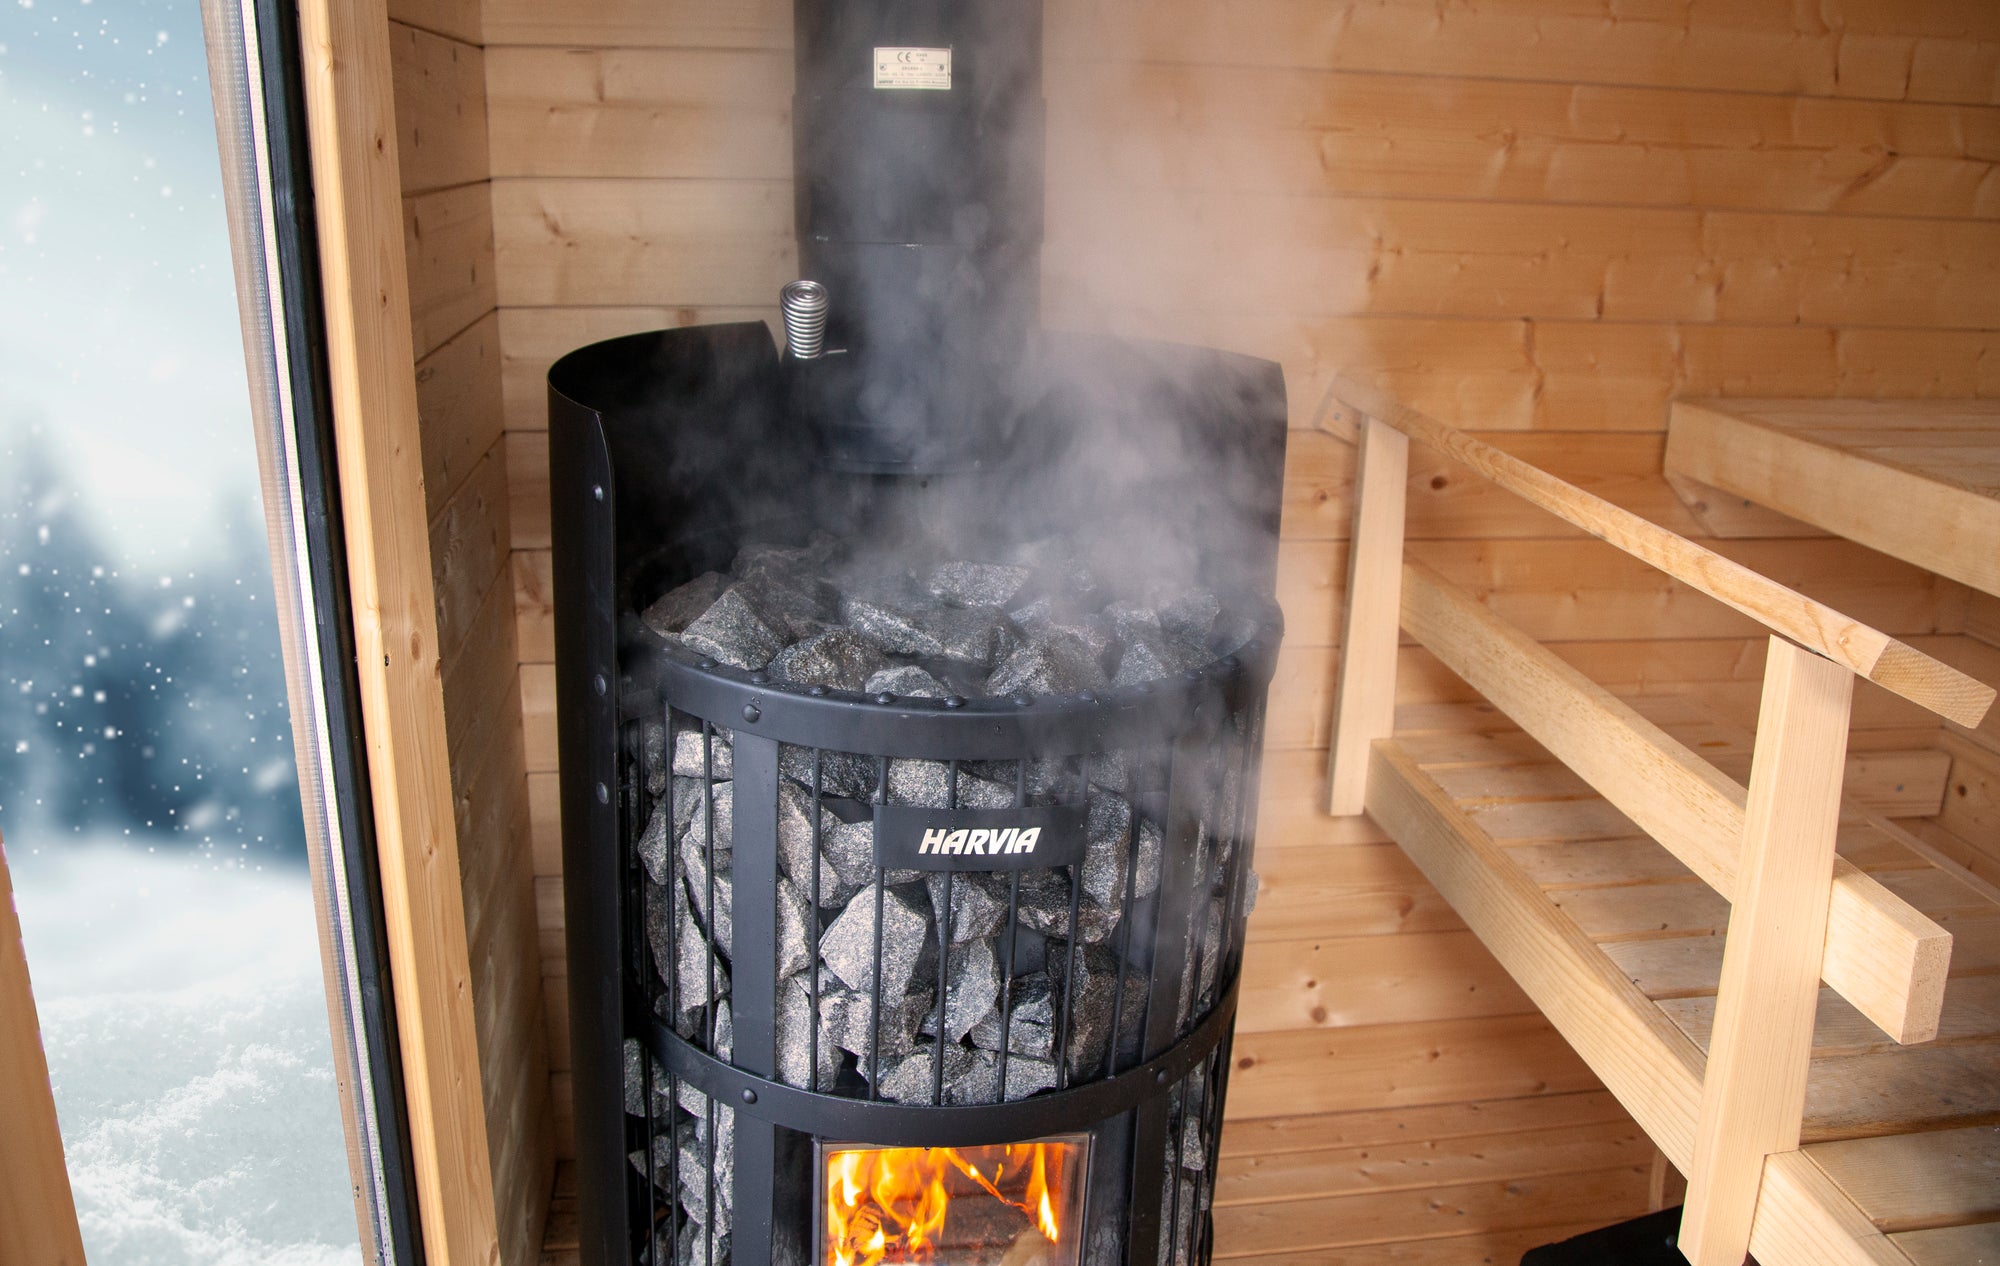 Harvia Legend 240 GreenFlame 15.9kW Wood-Burning Sauna Stove